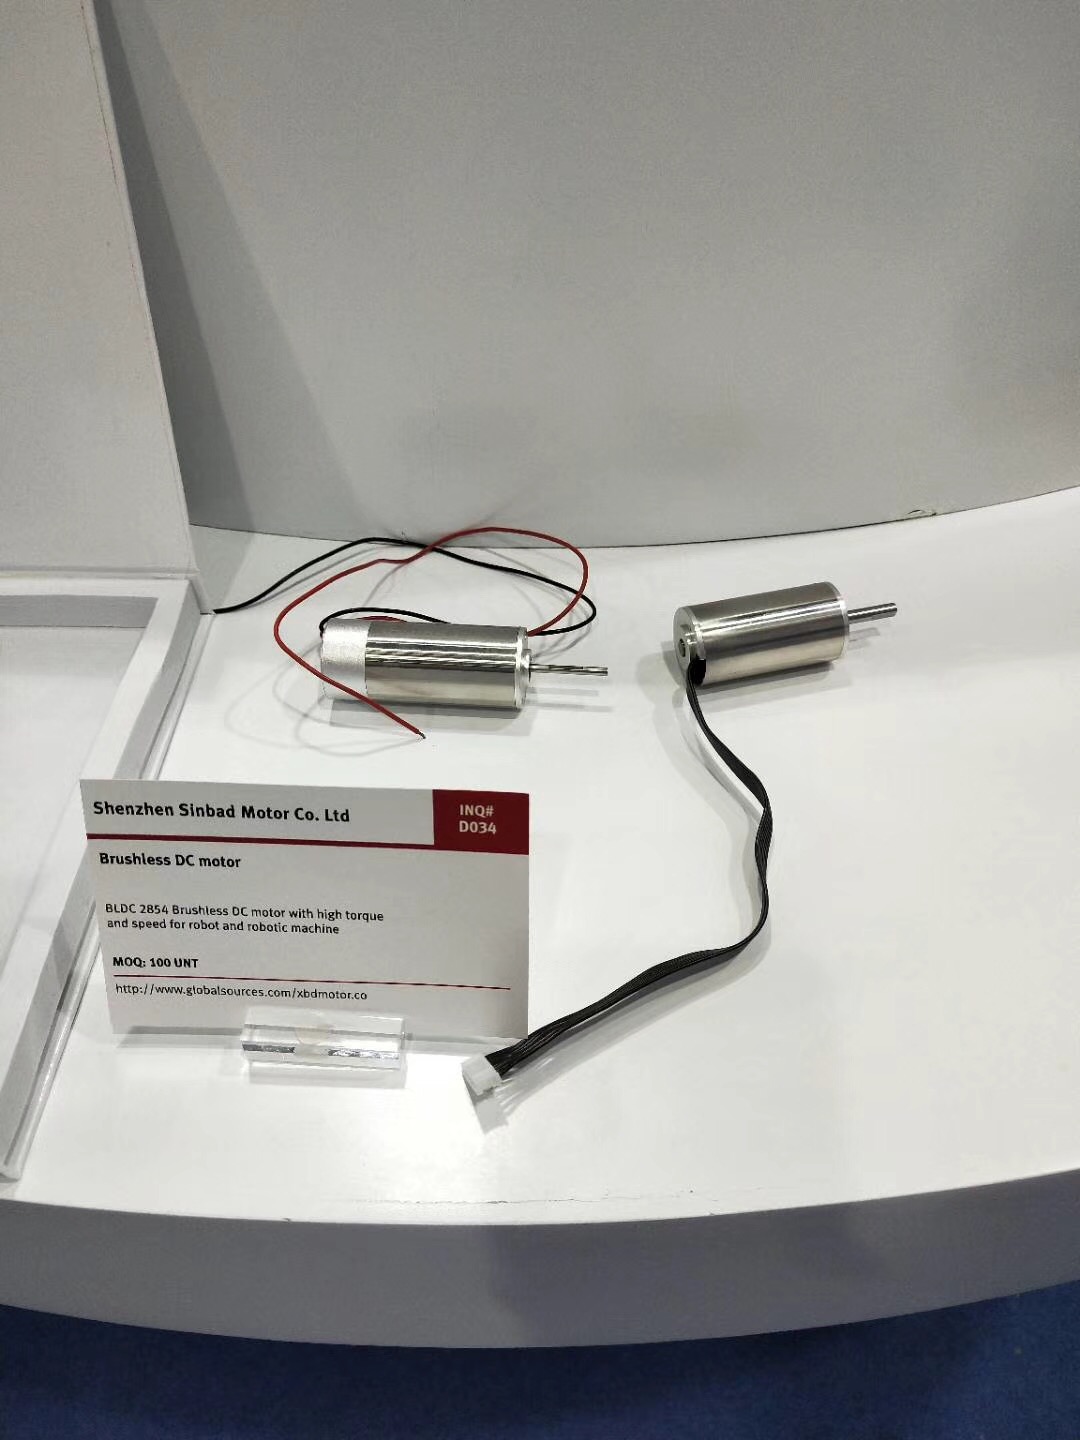 鑫宝达无芯直流电机和无刷直流电机在香港亚洲国际博览中心展出！